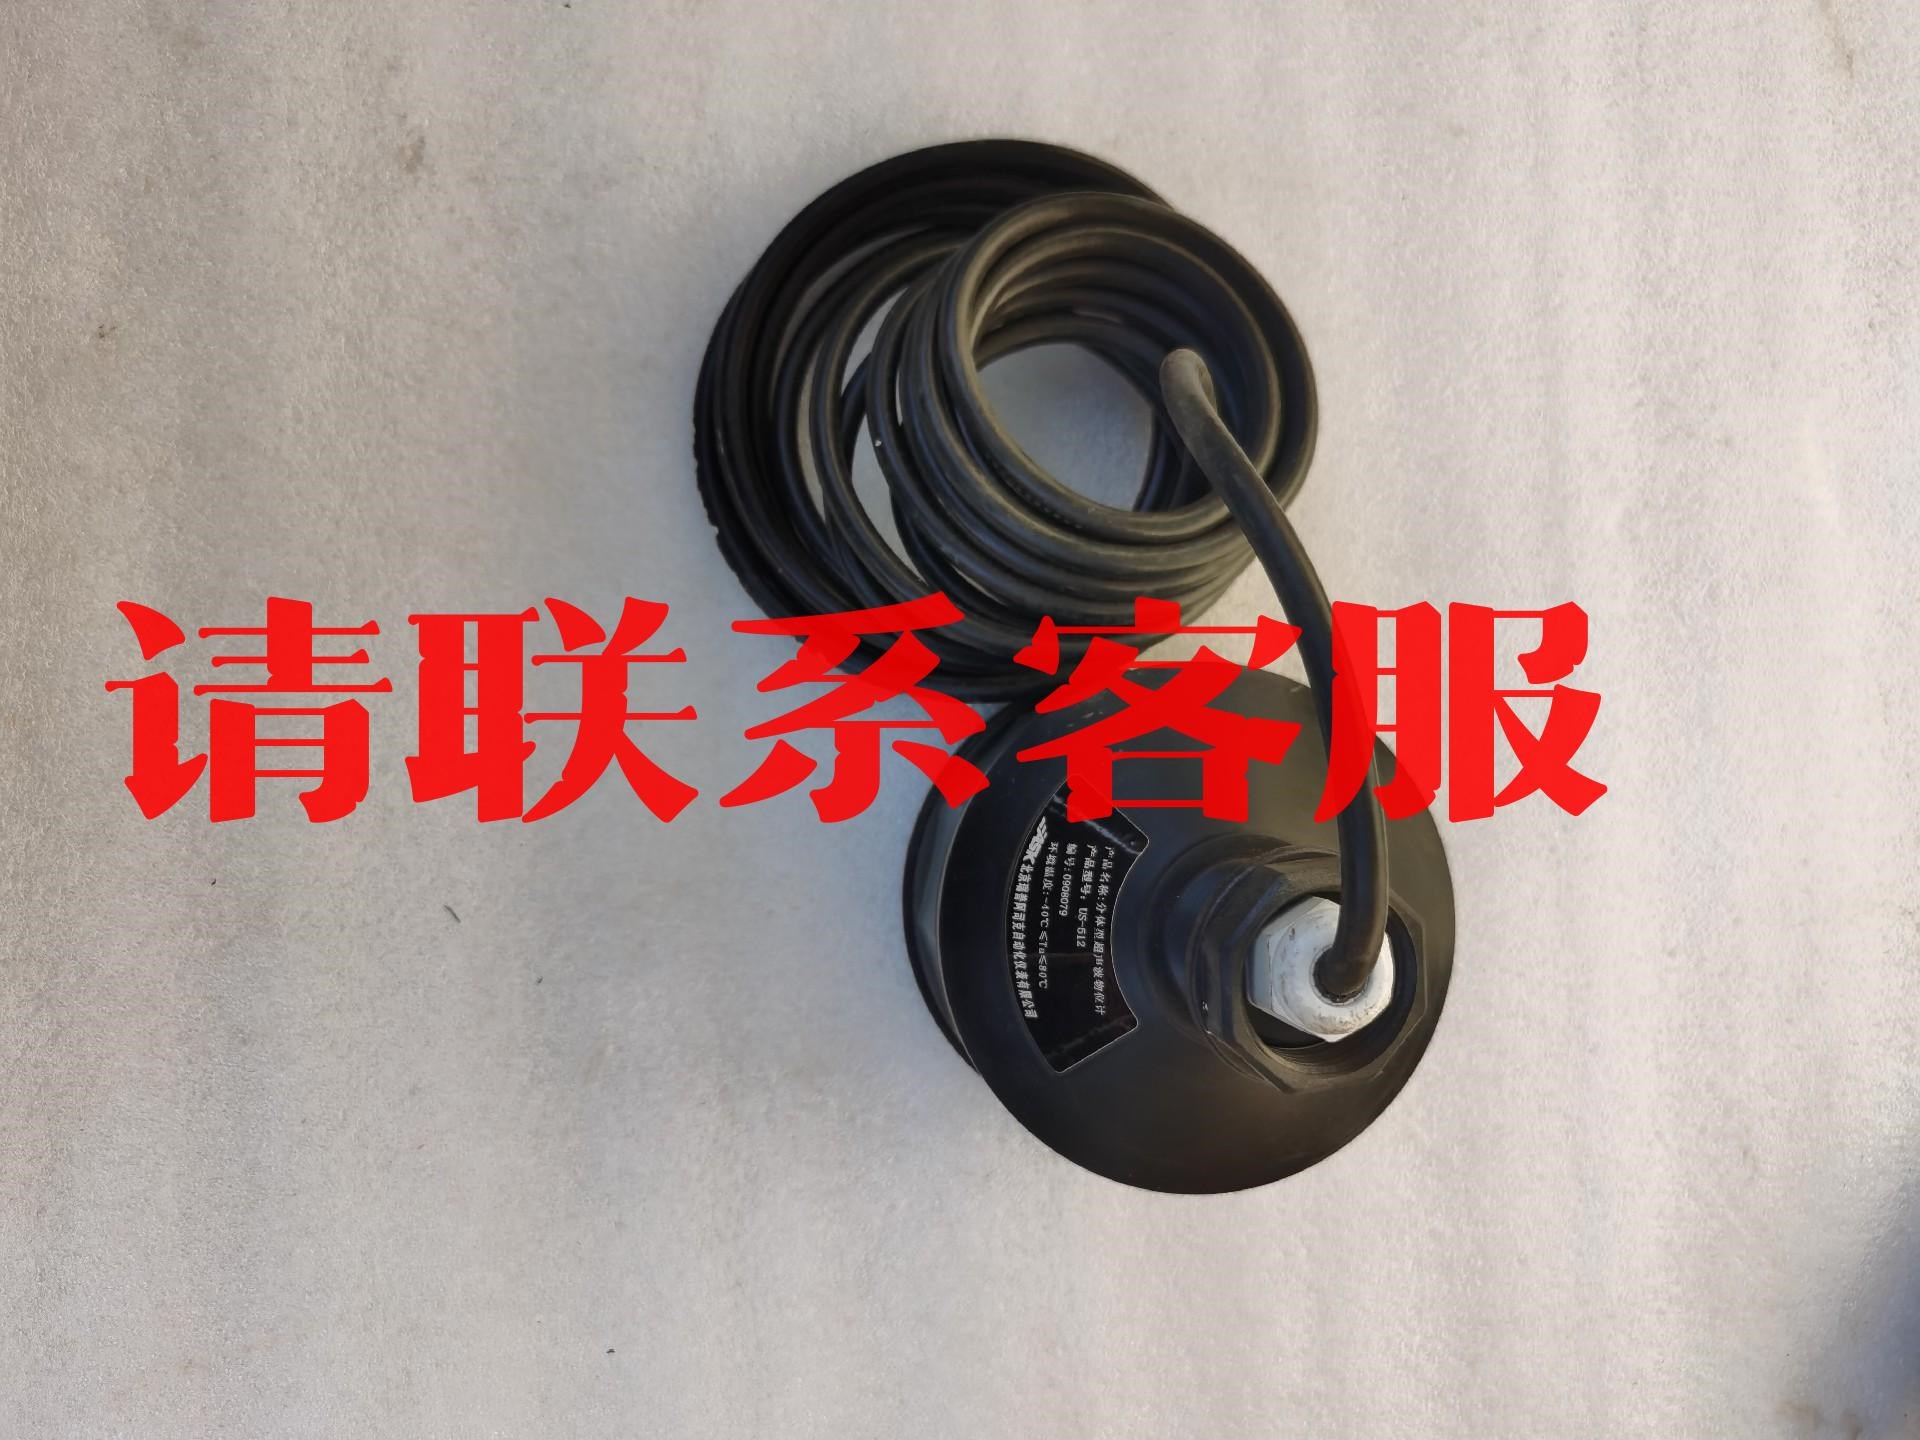 北京瑞普阿司克自动仪表有限公司分体型超声波物位计US-512议价出